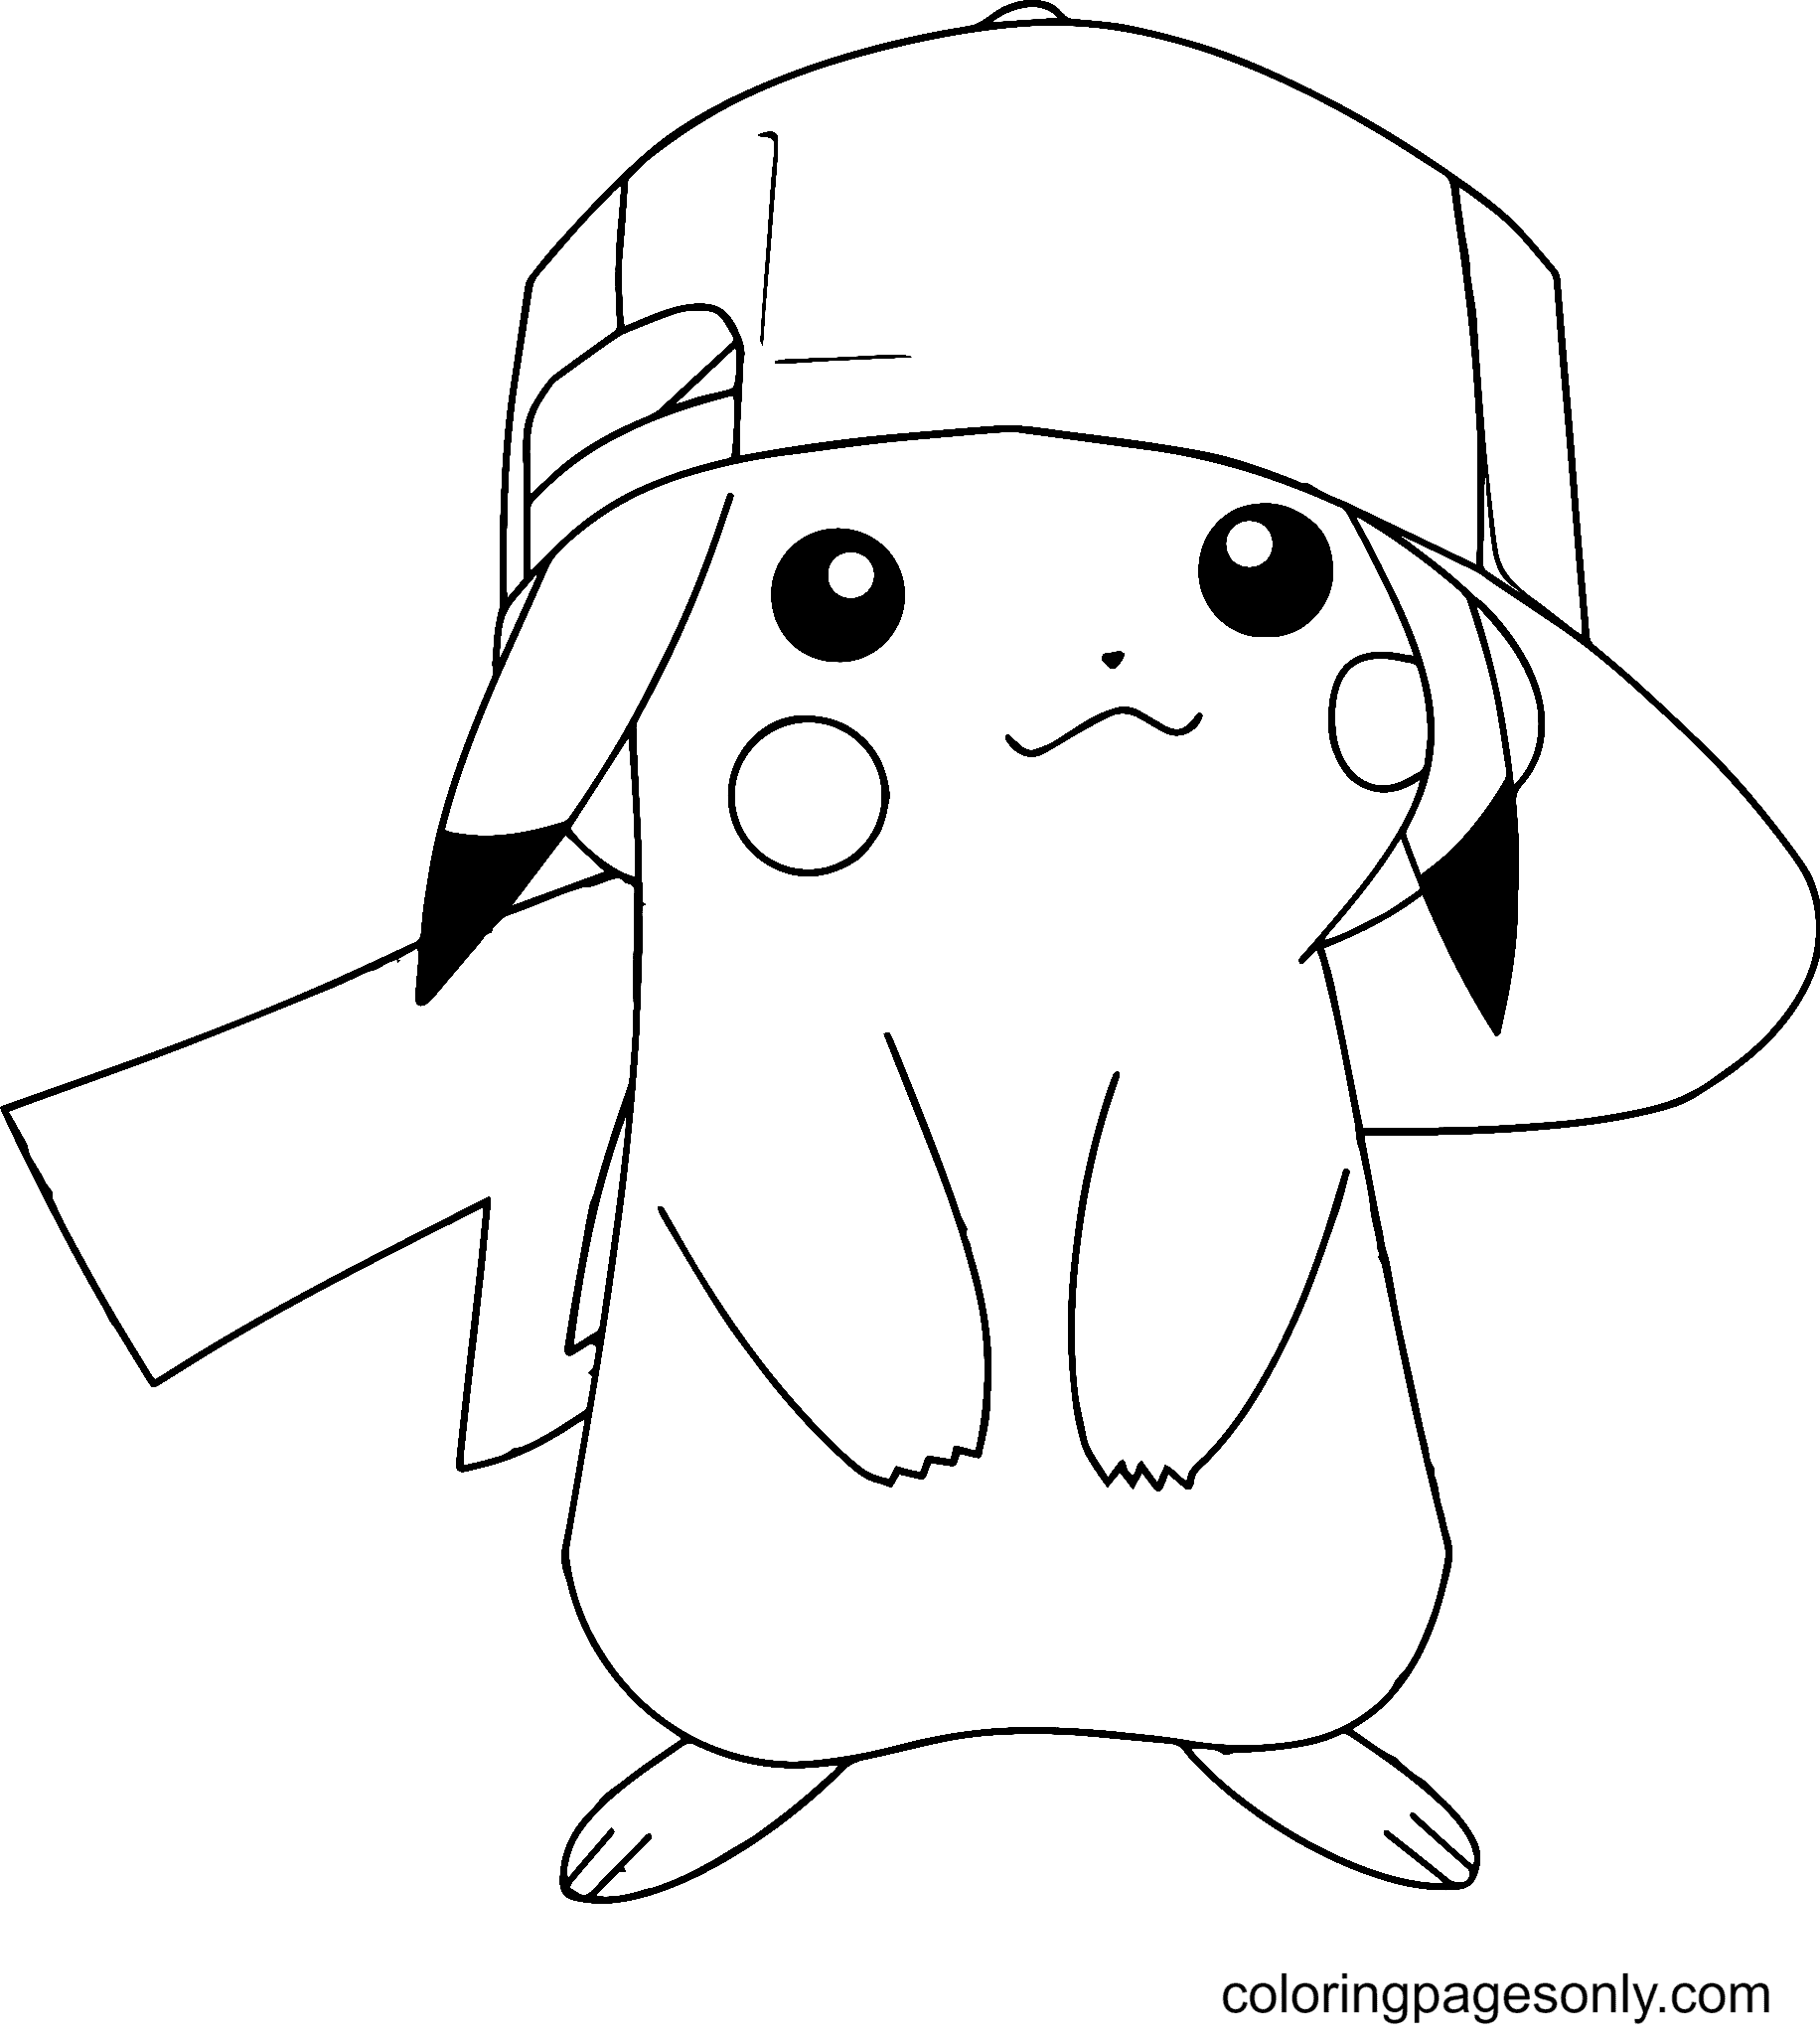 Malvorlagen Pikachu trägt einen Hut